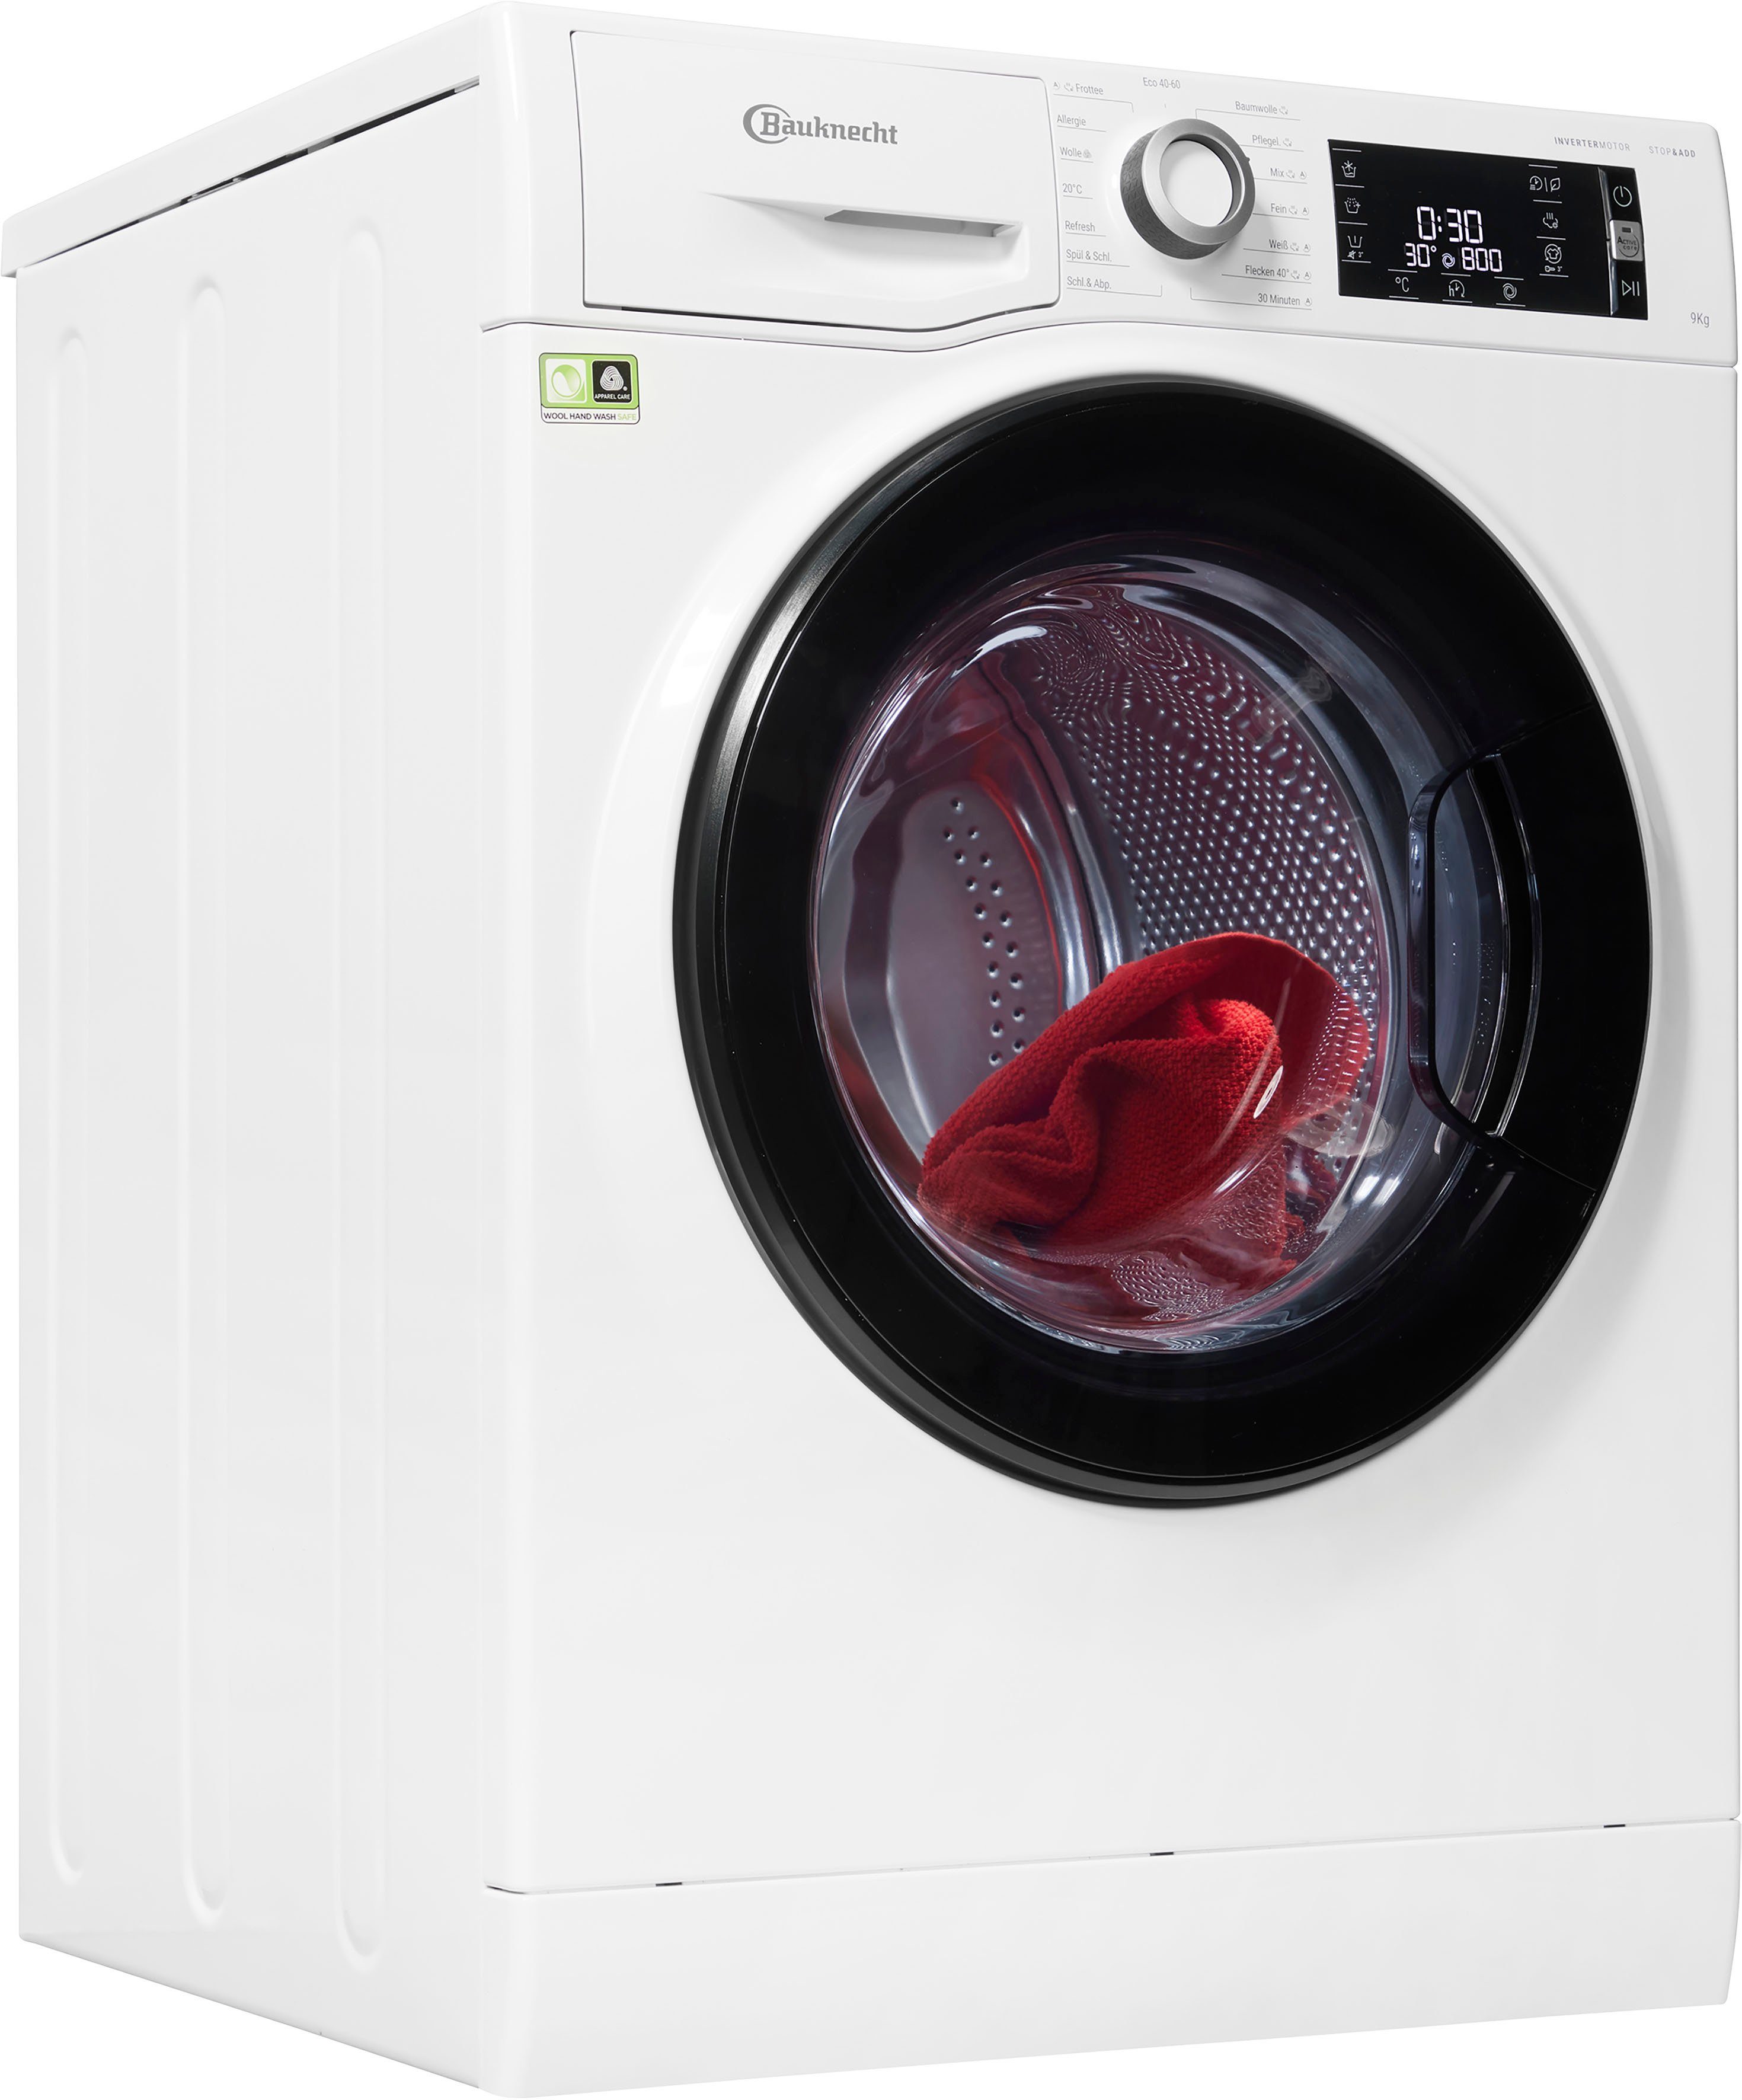 BAUKNECHT Waschmaschine WM Elite 9A, 9 kg, 1400 U/min | Frontlader